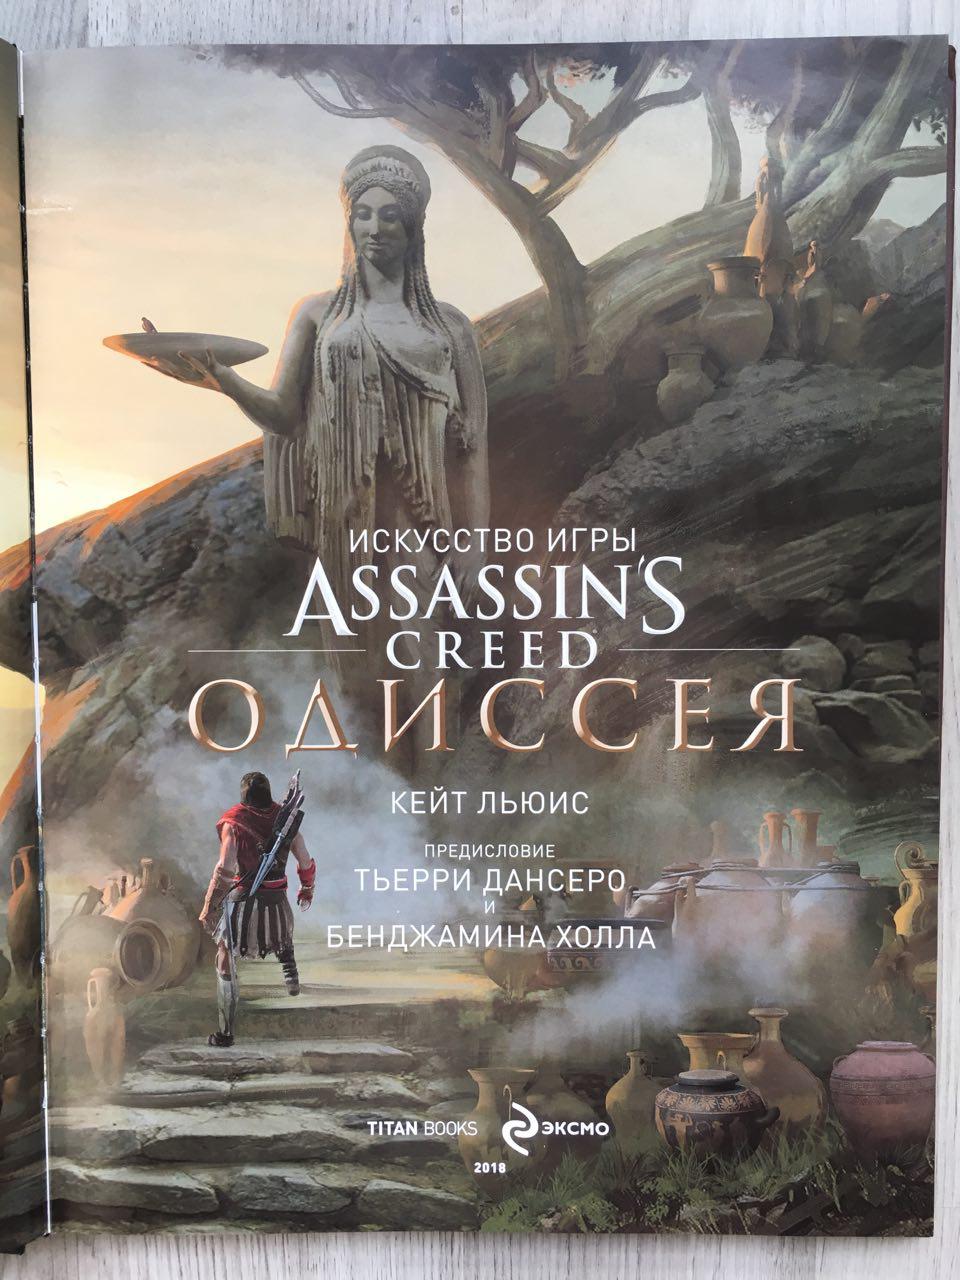 Галерея Обзор артбука по Assassinʼs Creed: Odyssey — Древняя Греция в набросках и красочных рисунках - 3 фото